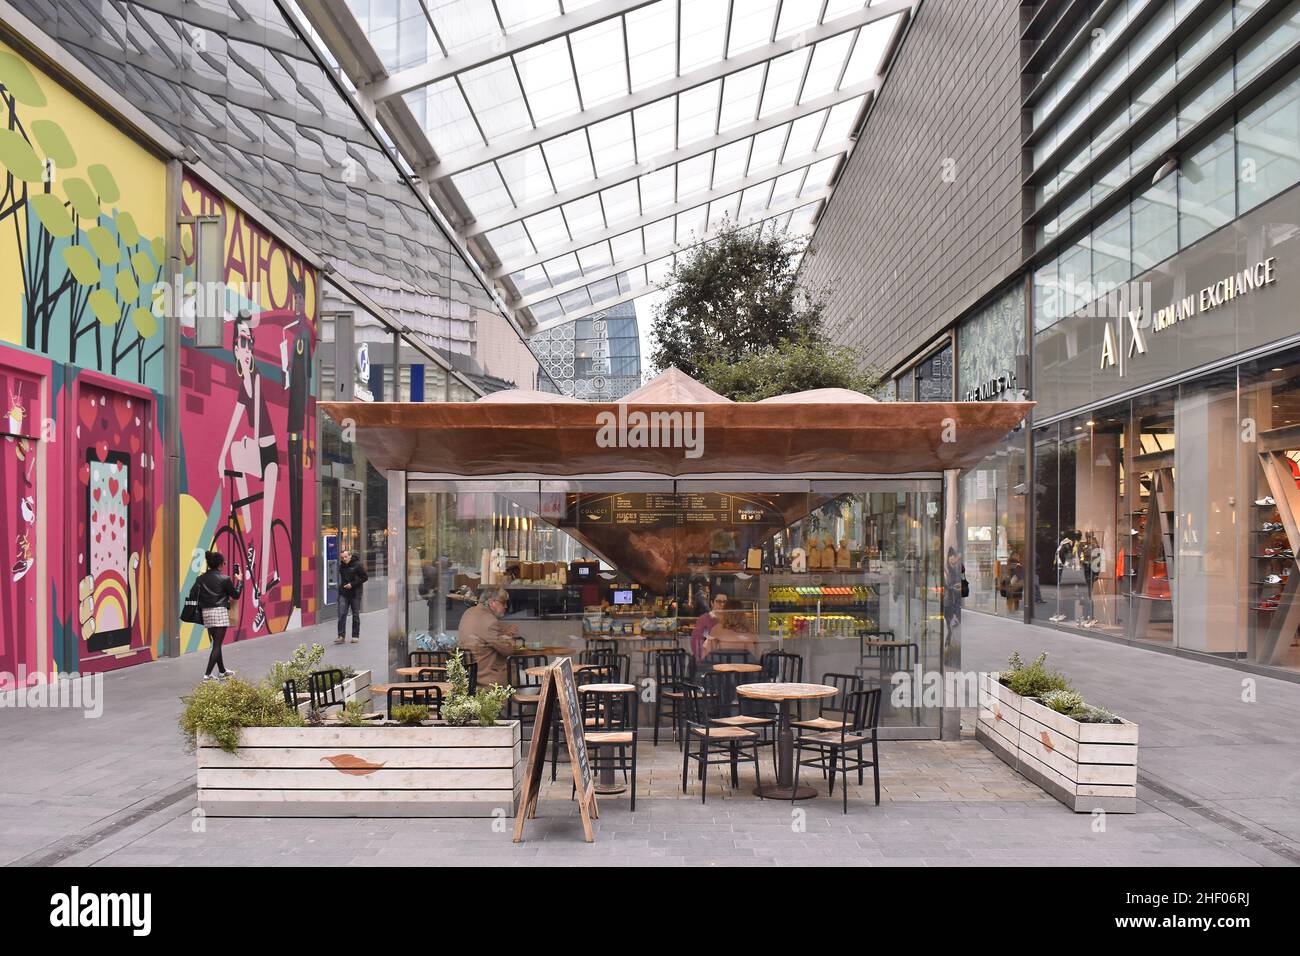 Westfield Stratford - modernes Einkaufszentrum Passage mit Geschäften und Restaurants, London Großbritannien. Stockfoto